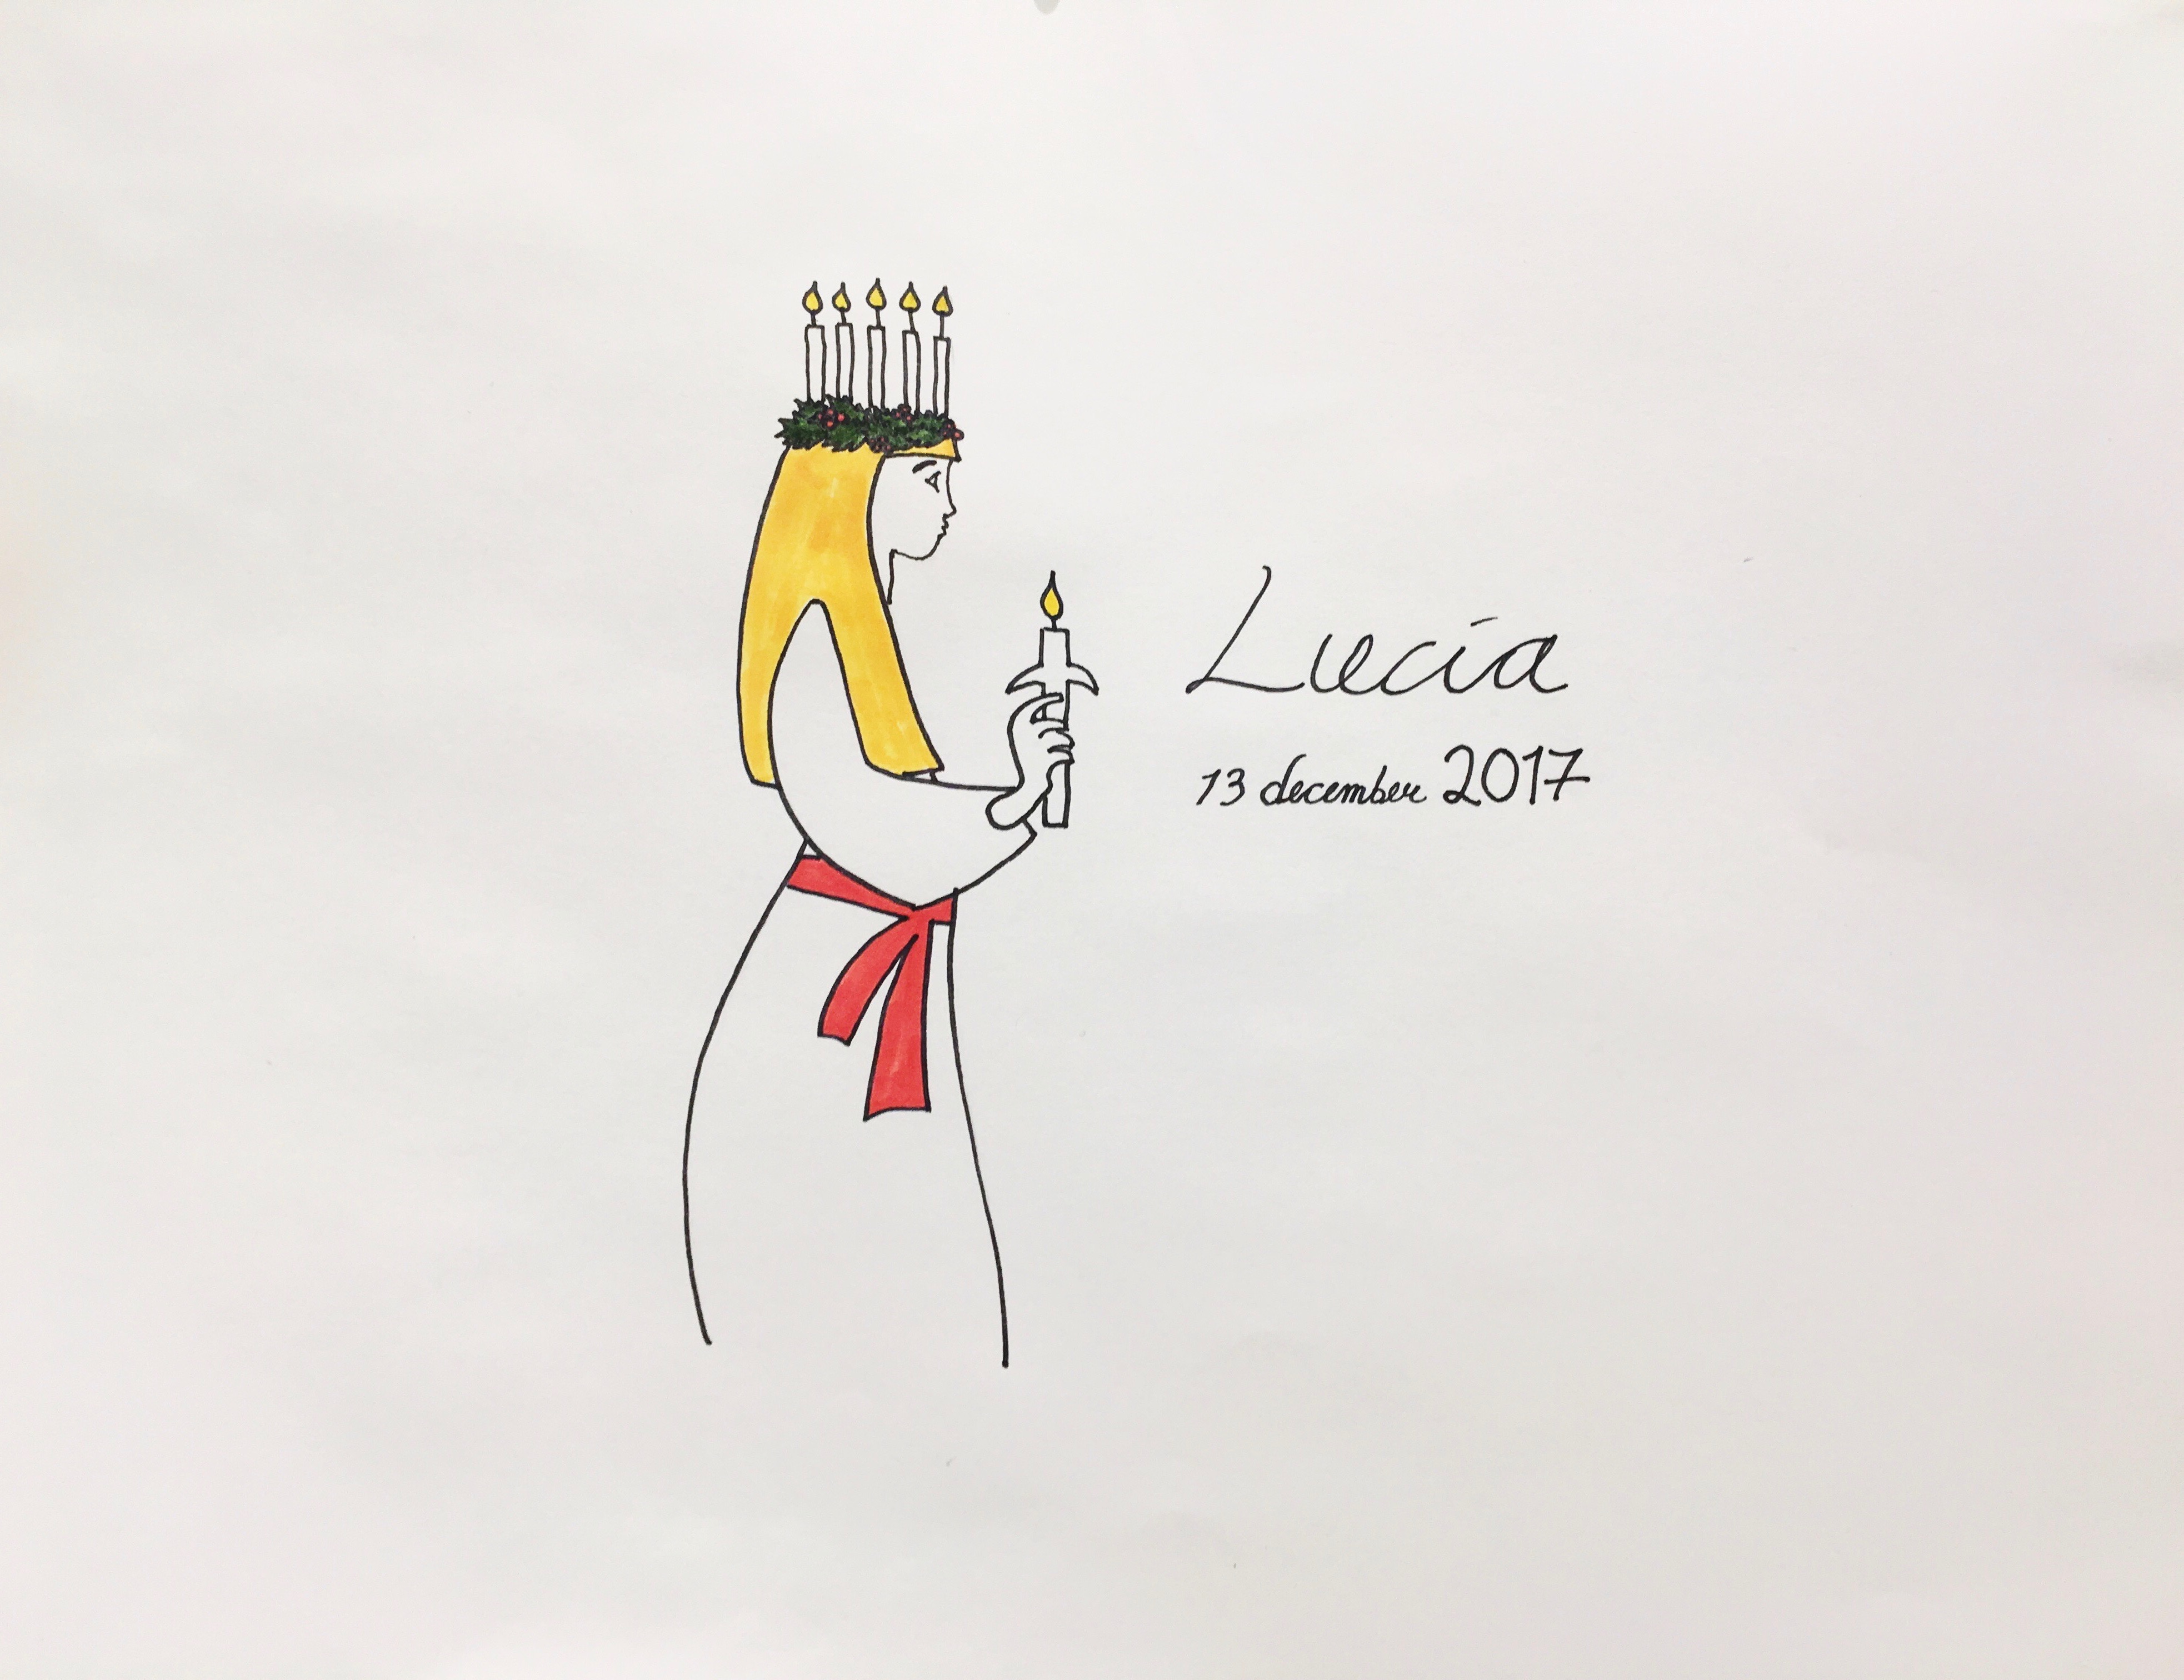 Vem är Lucia?